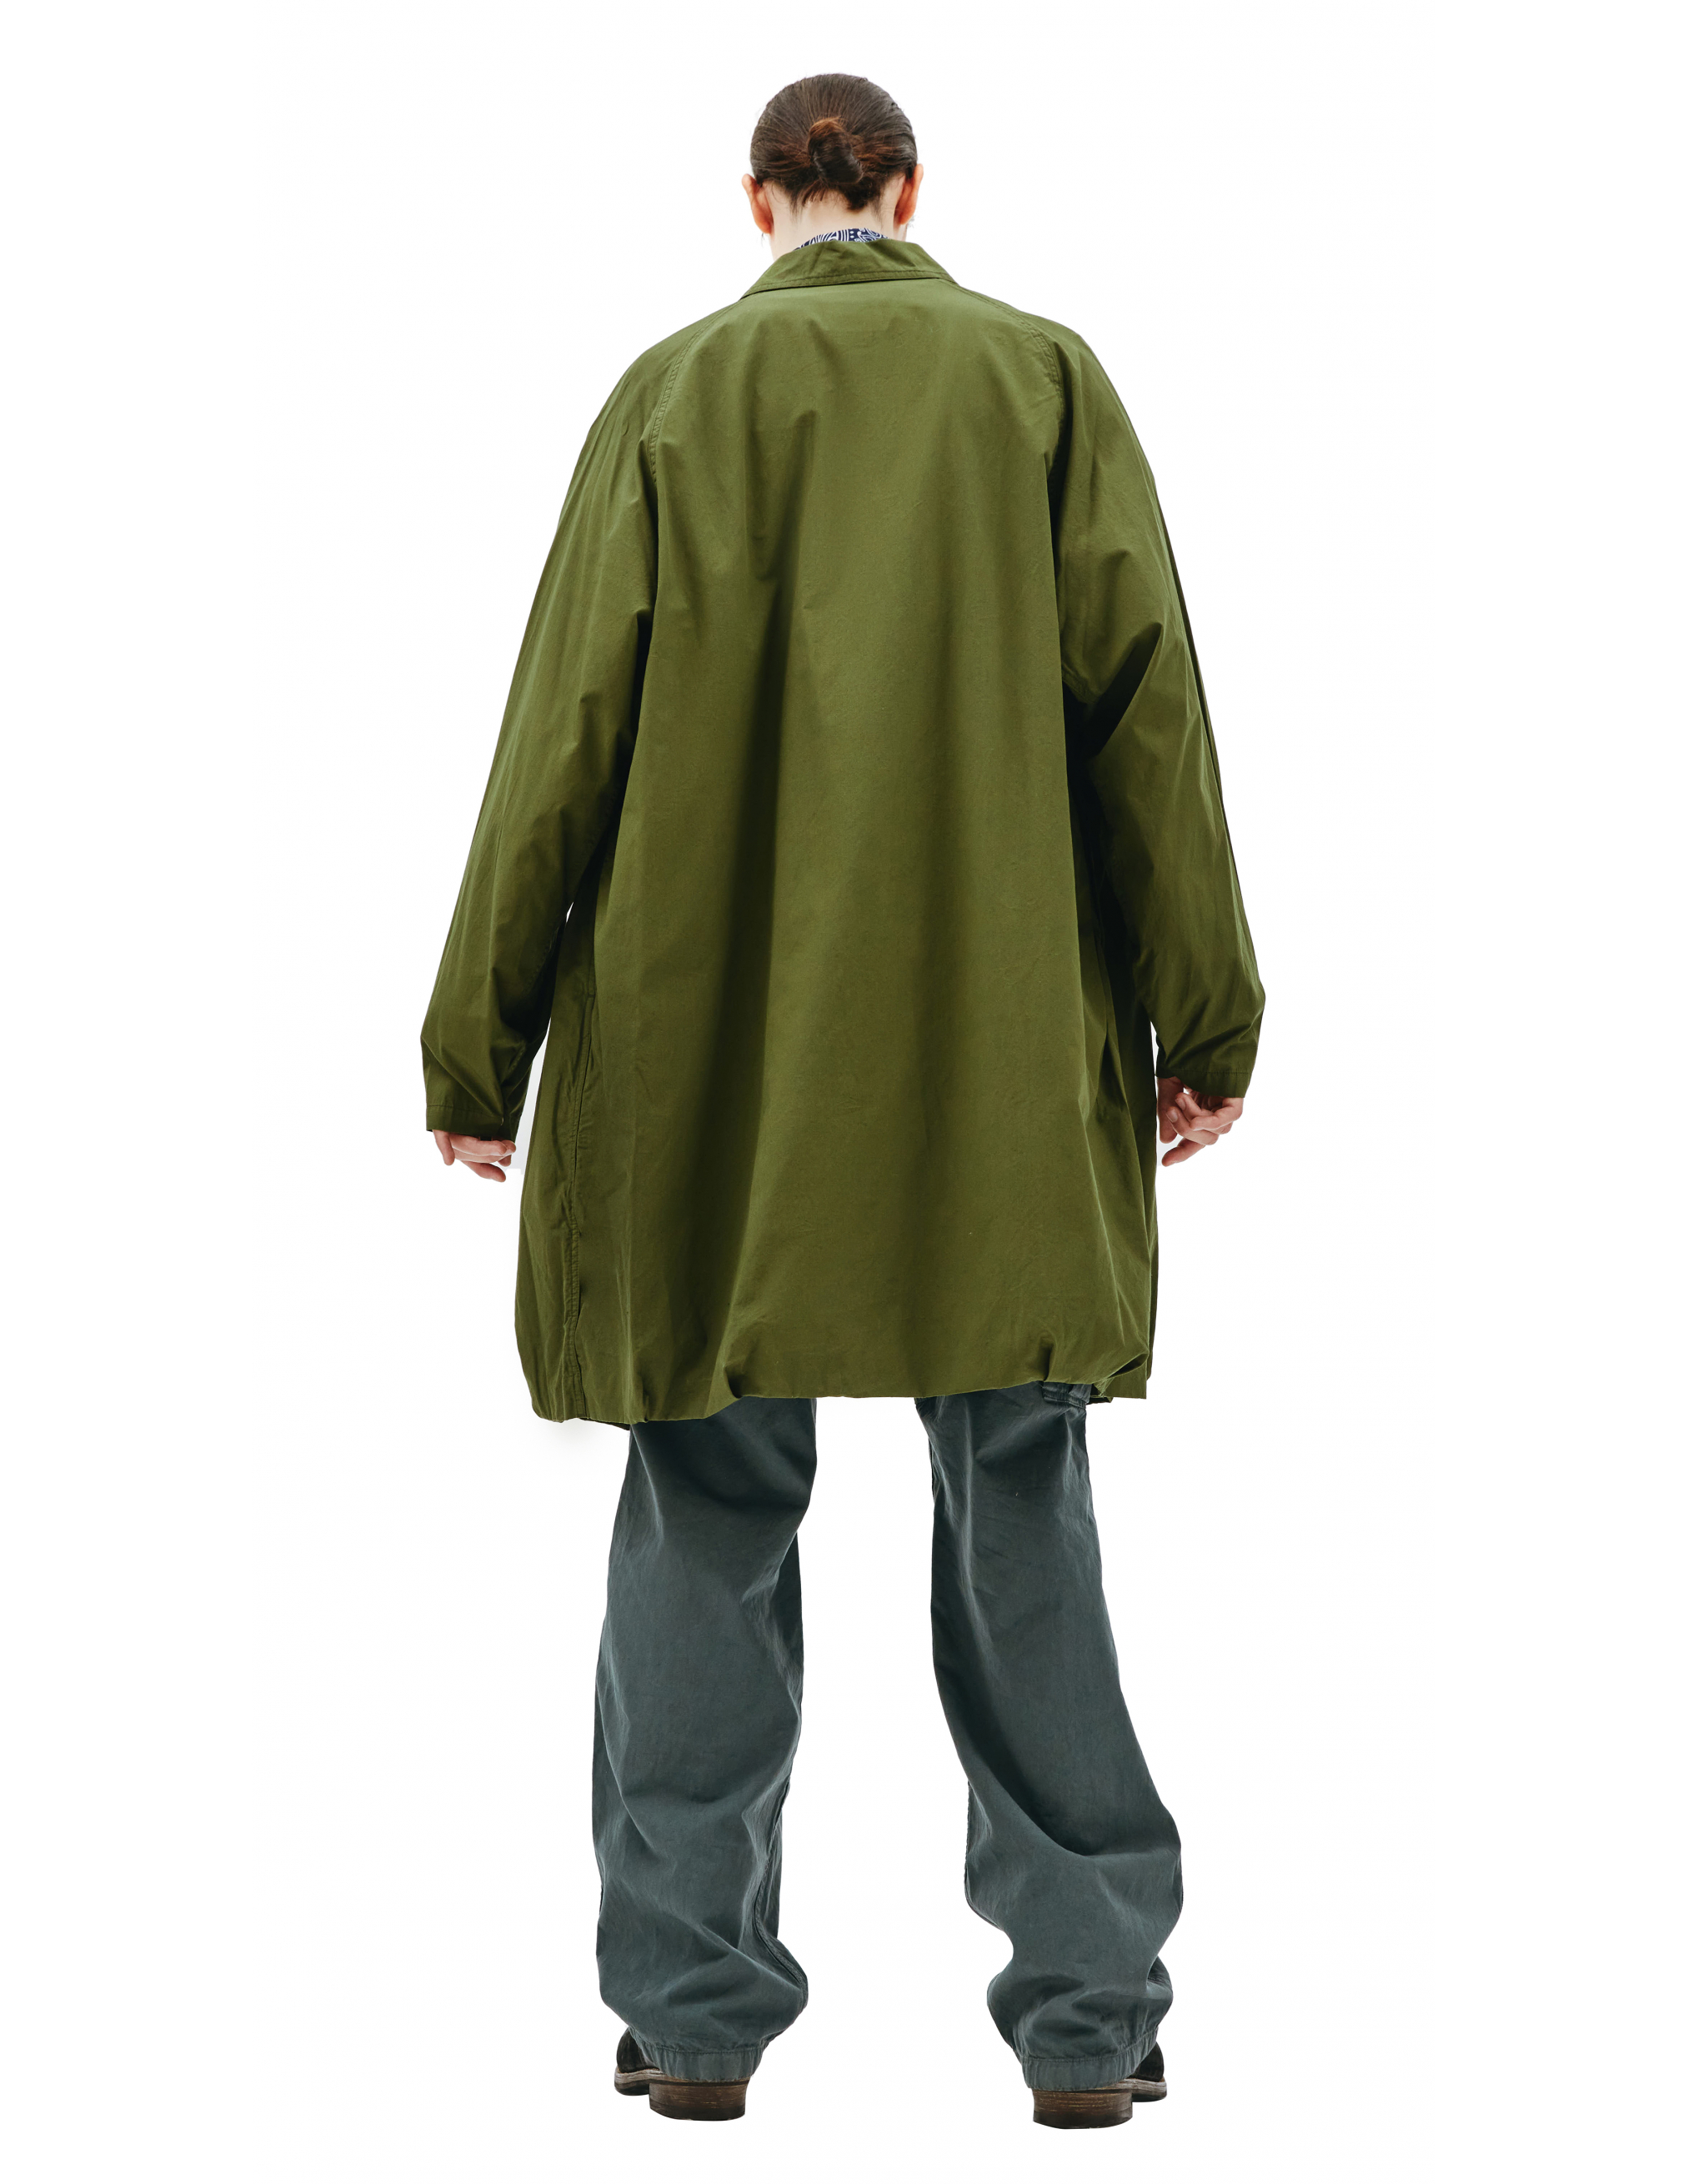 Пальто из хлопка с накладным карманом Visvim 0121205013027/olive, размер 5;4 0121205013027/olive - фото 4